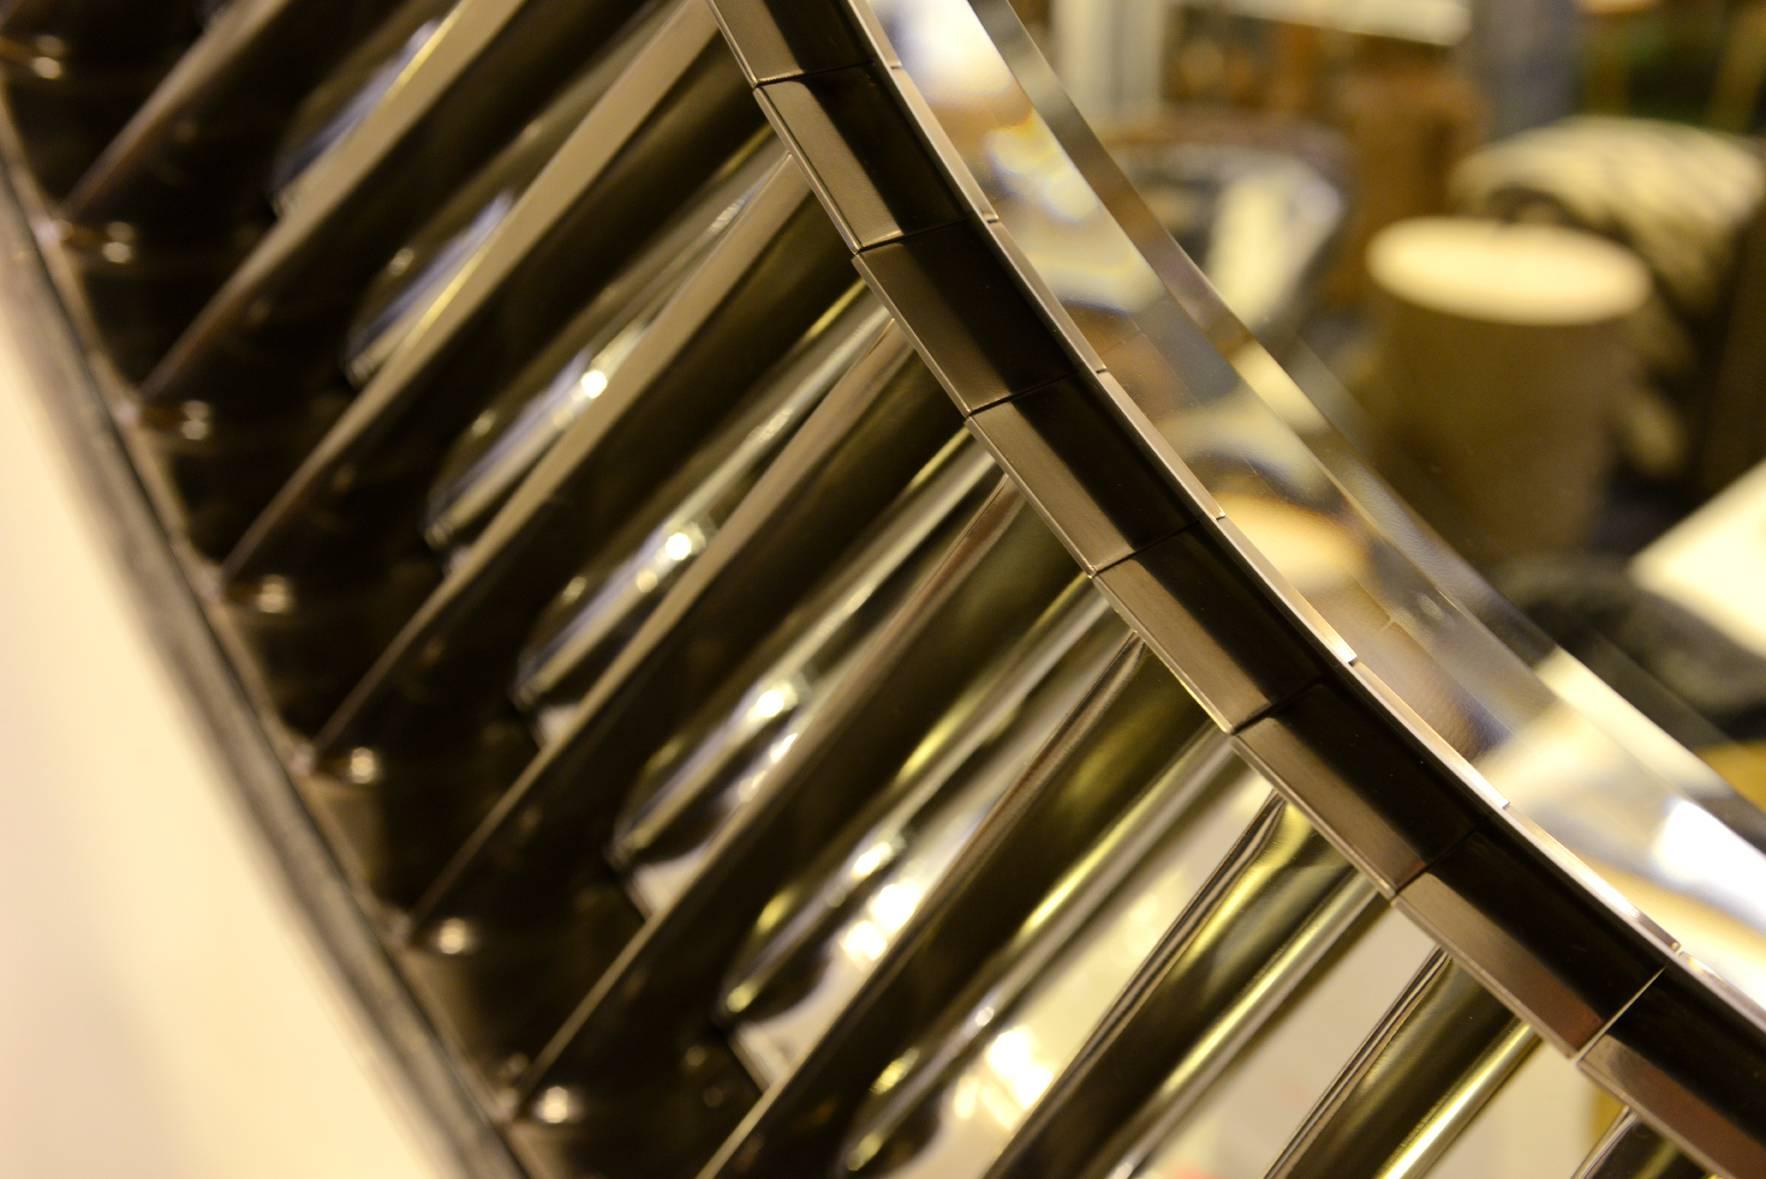 Spiegelspiegel Stator Ring Titan von Rolls Royce Pegasus 105 Turbine, hergestellt 1985 (21. Jahrhundert und zeitgenössisch)